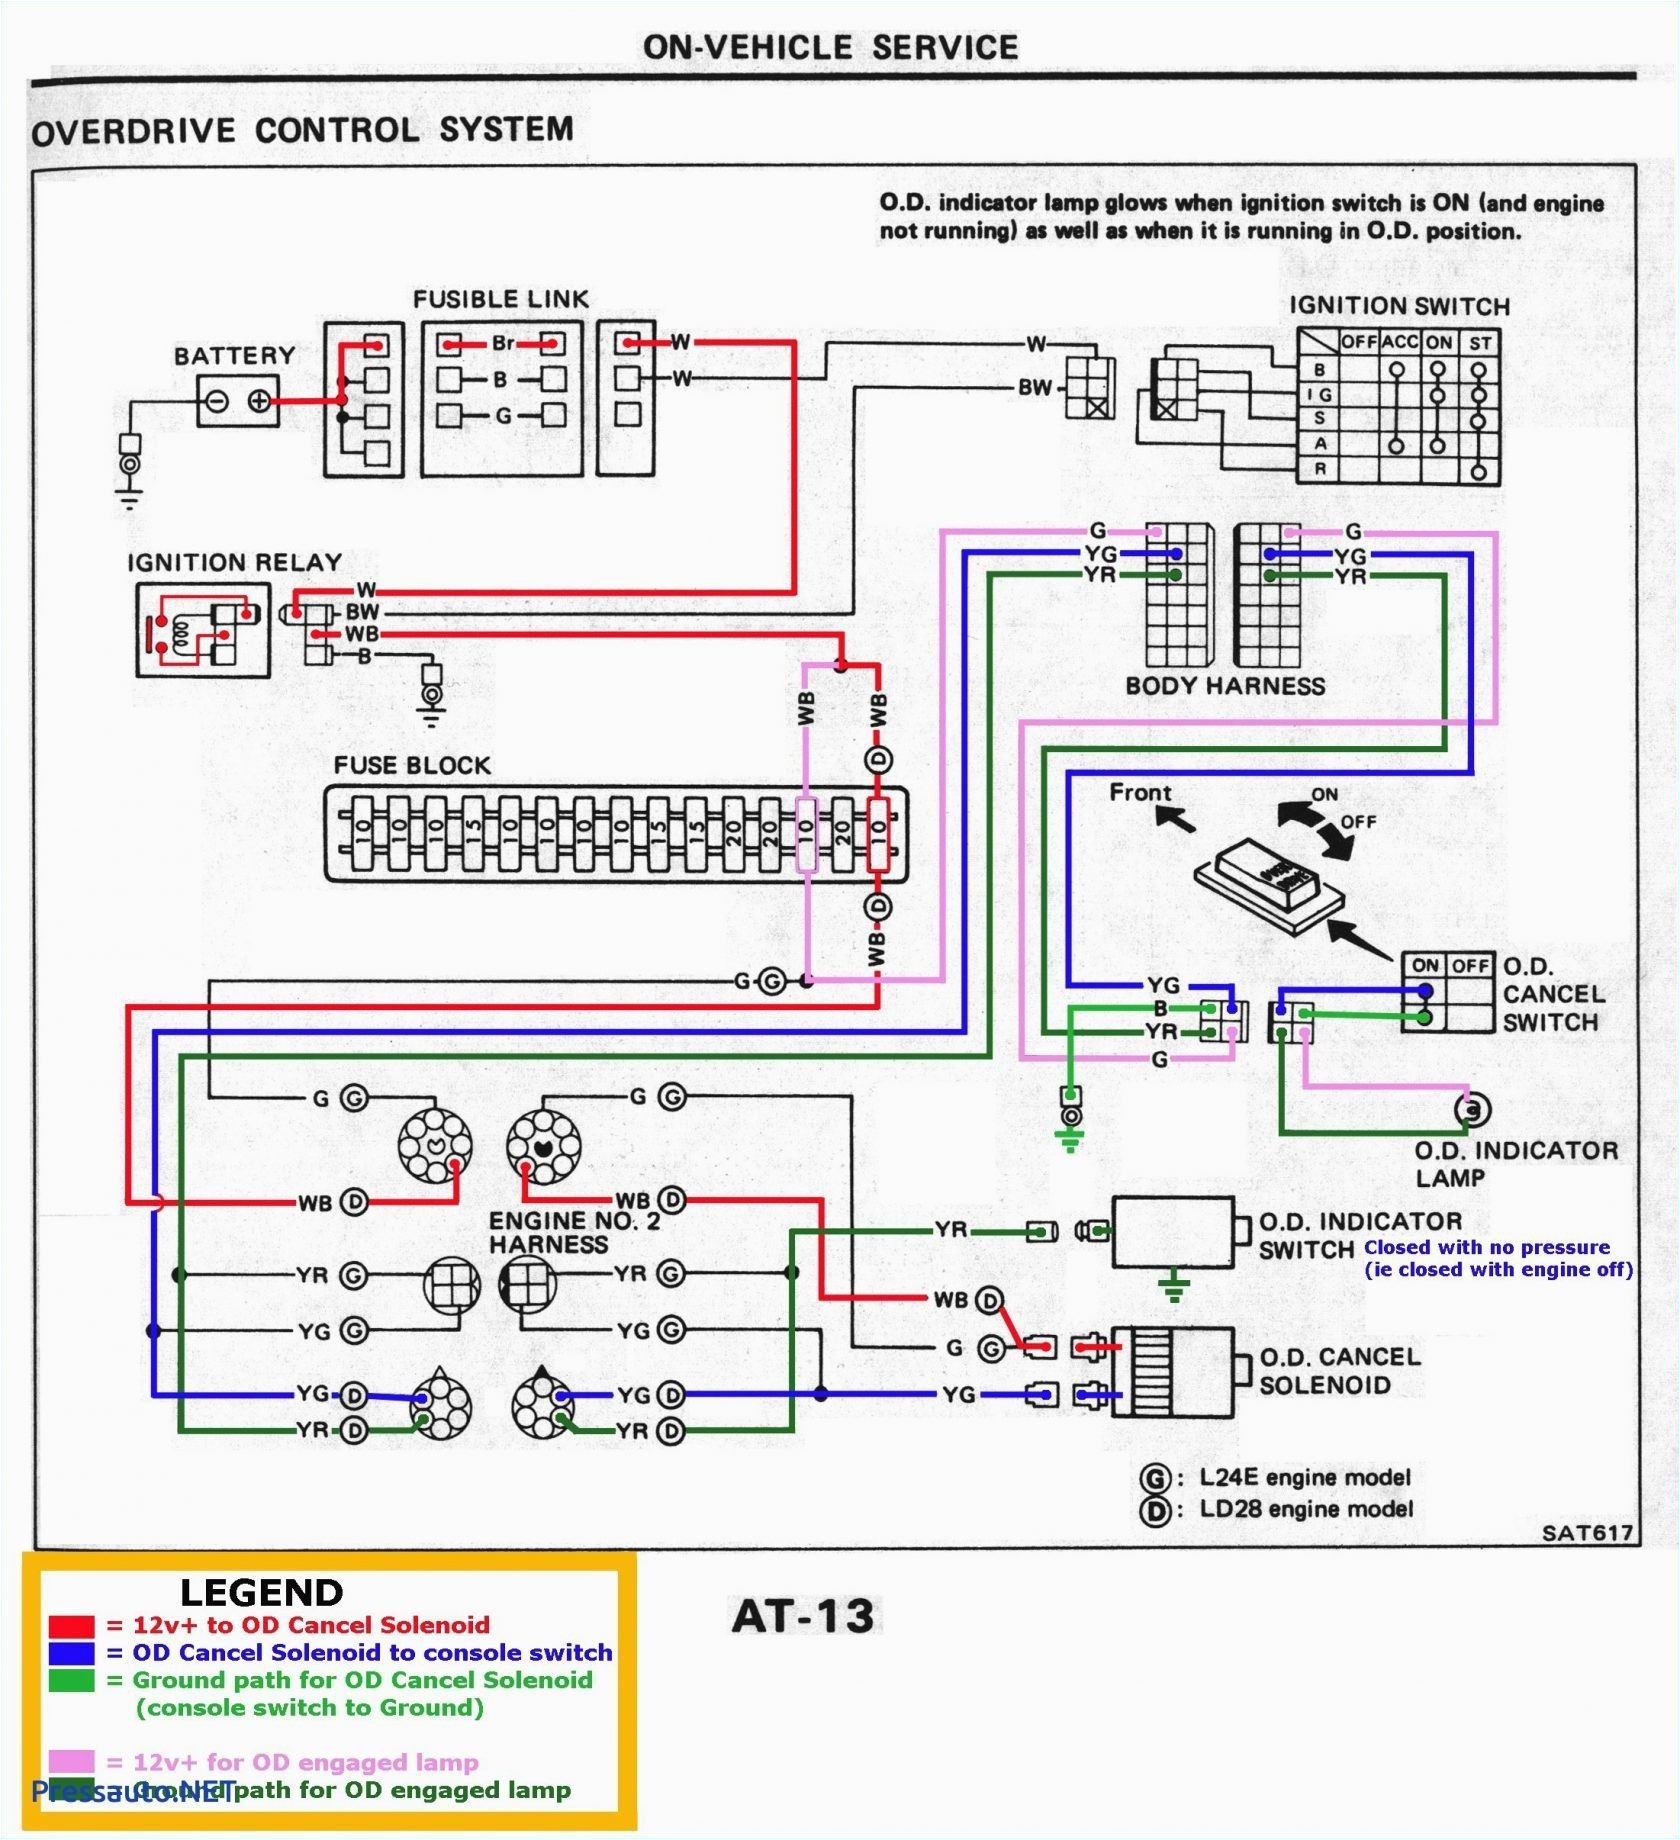 bmw 645 wiring diagram wiring diagram sheetfuse diagram 2006 bmw 325ix wiring diagram bmw 645 wiring